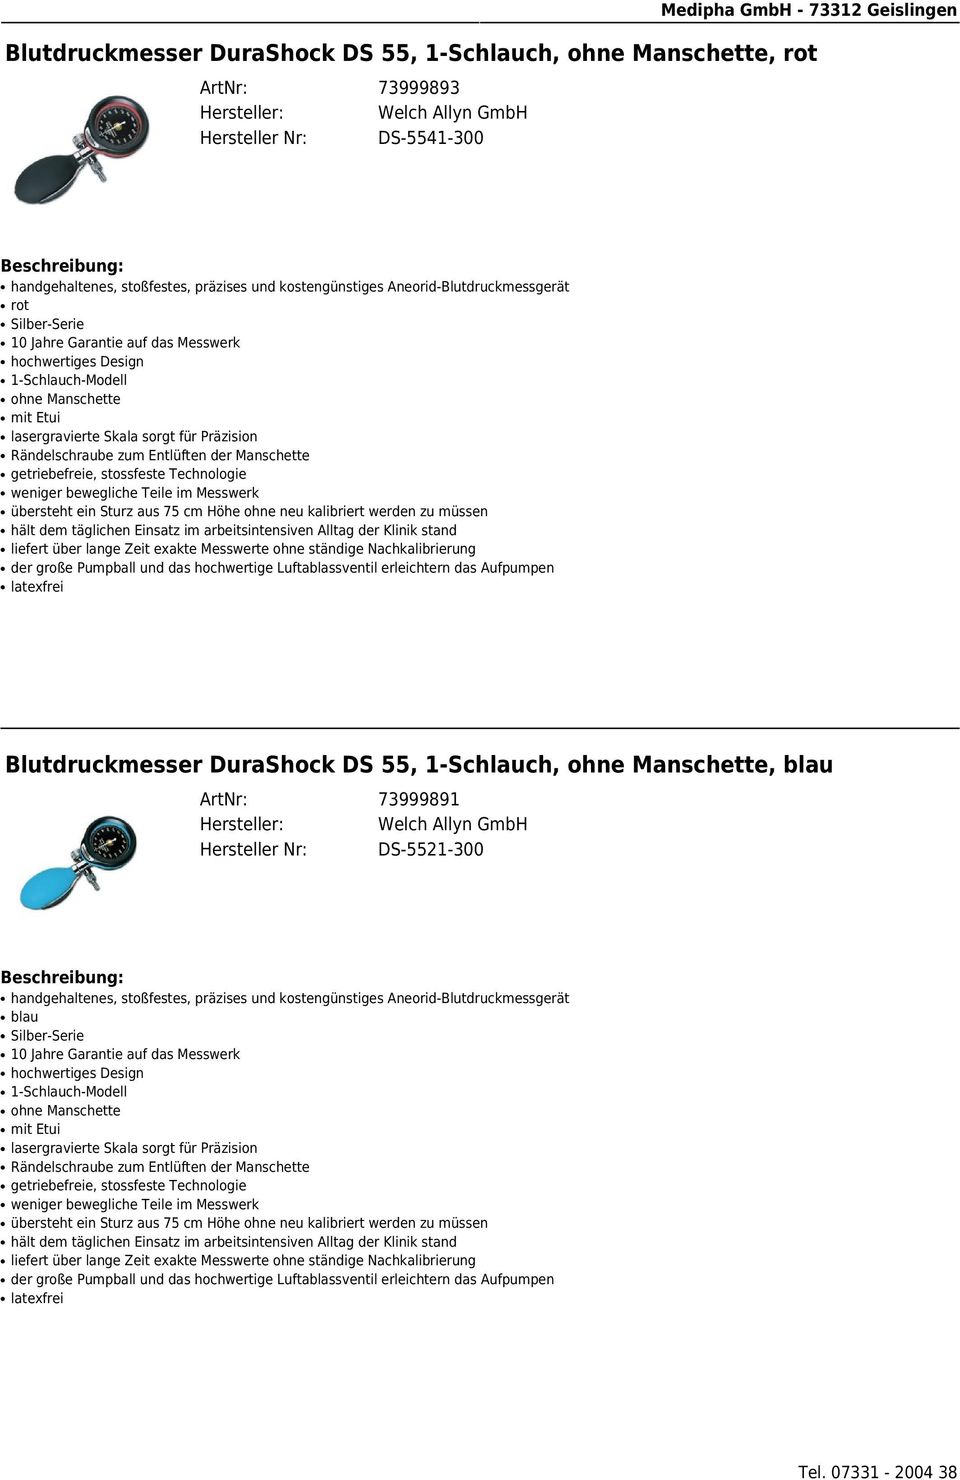 Blutdruckmesser DuraShock DS 55, 1-Schlauch, ohne Manschette, blau ArtNr: 73999891 Hersteller Nr: DS-5521-300 blau Silber-Serie